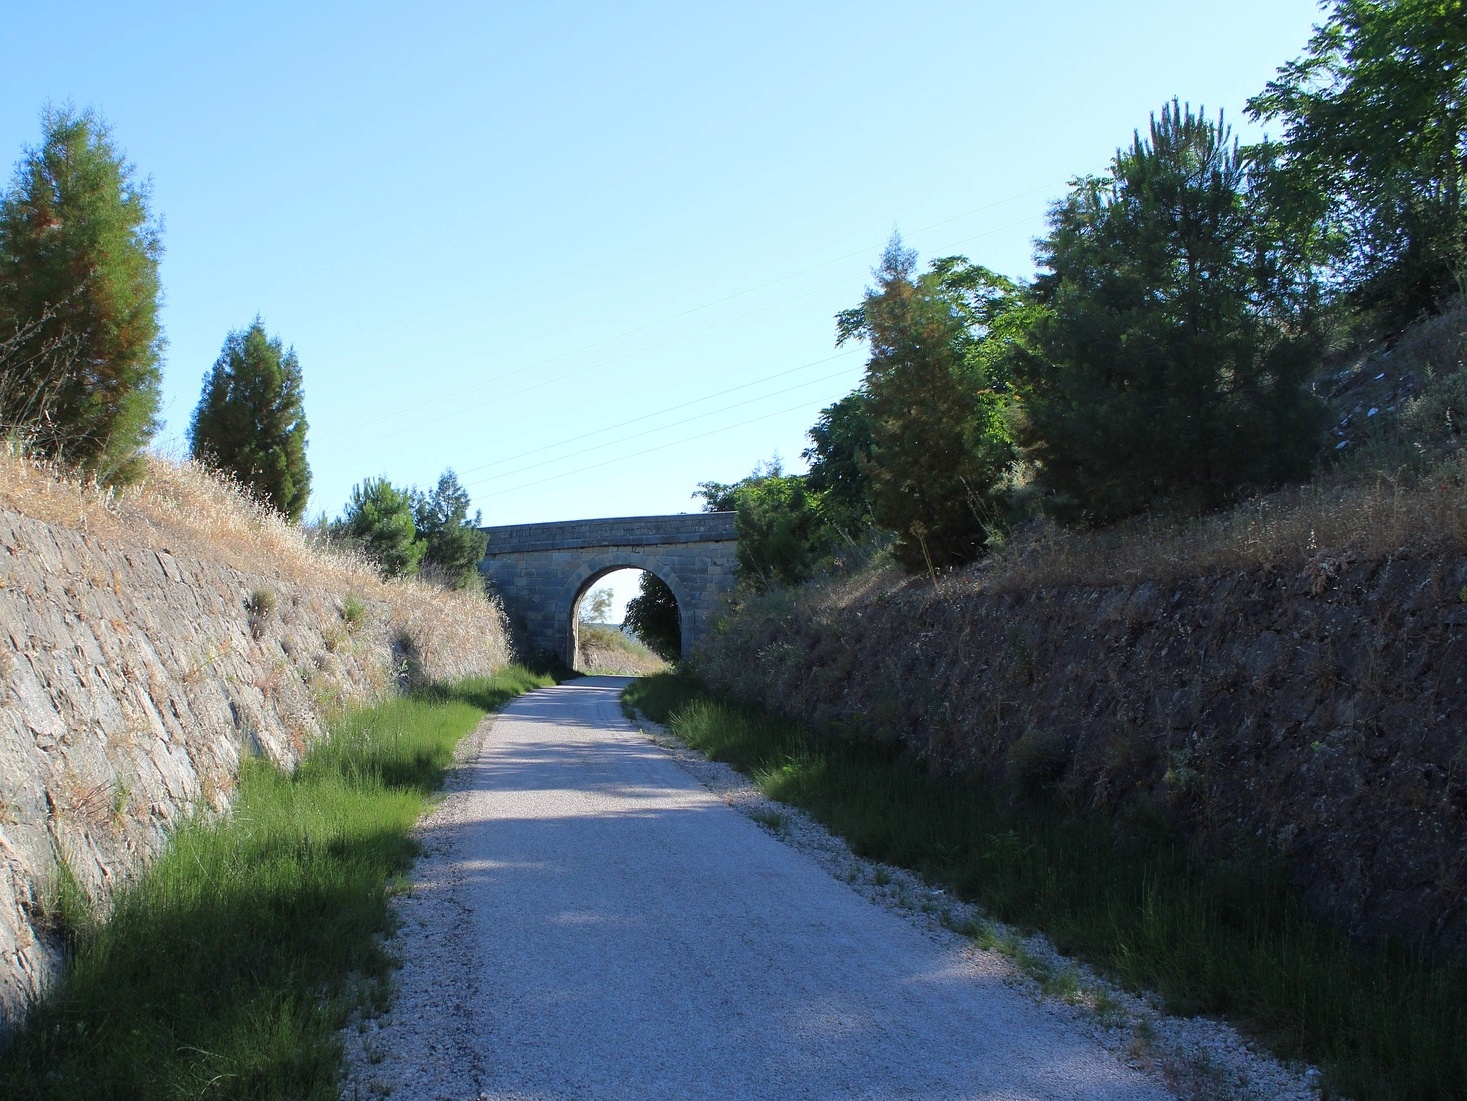 Old railways turned into biking routes - the vias verdes